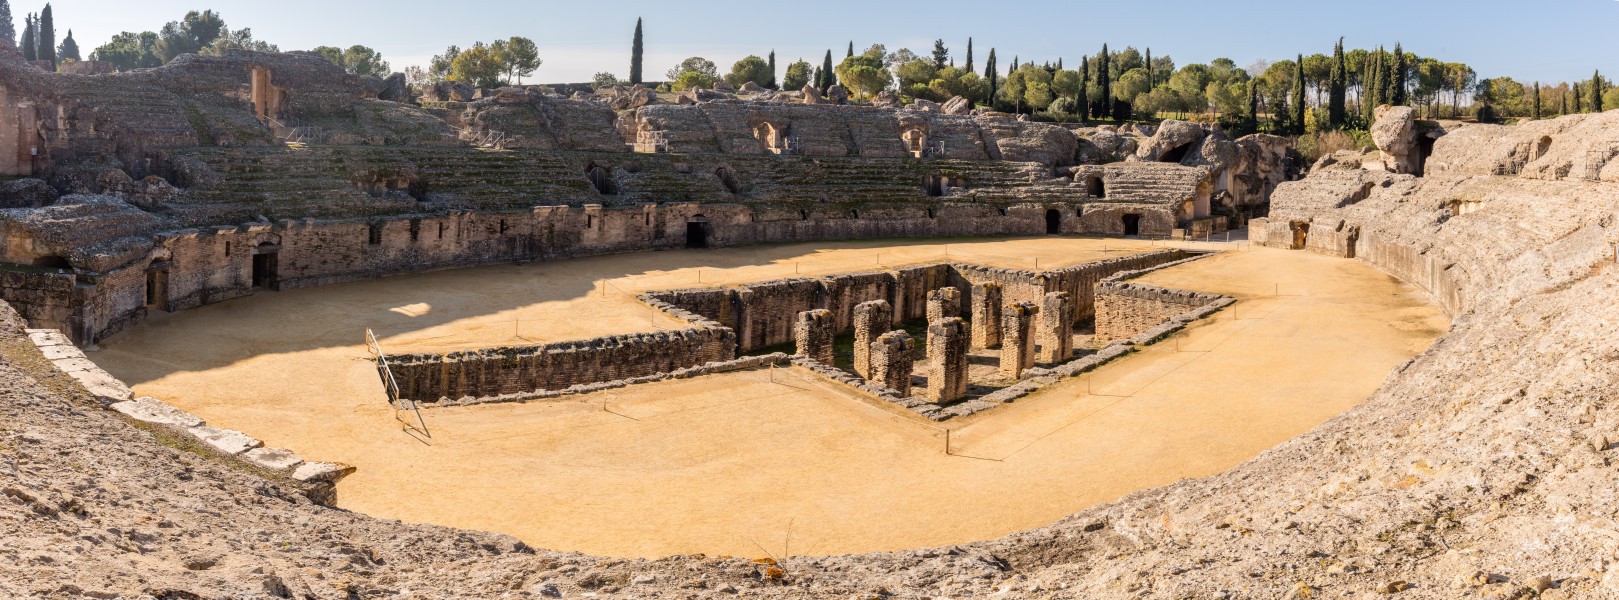 Anfiteatro de las ruinas romanas de Itálica, Santiponce, Sevilla, España, 2015-12-06, DD 34-45 PAN HDR